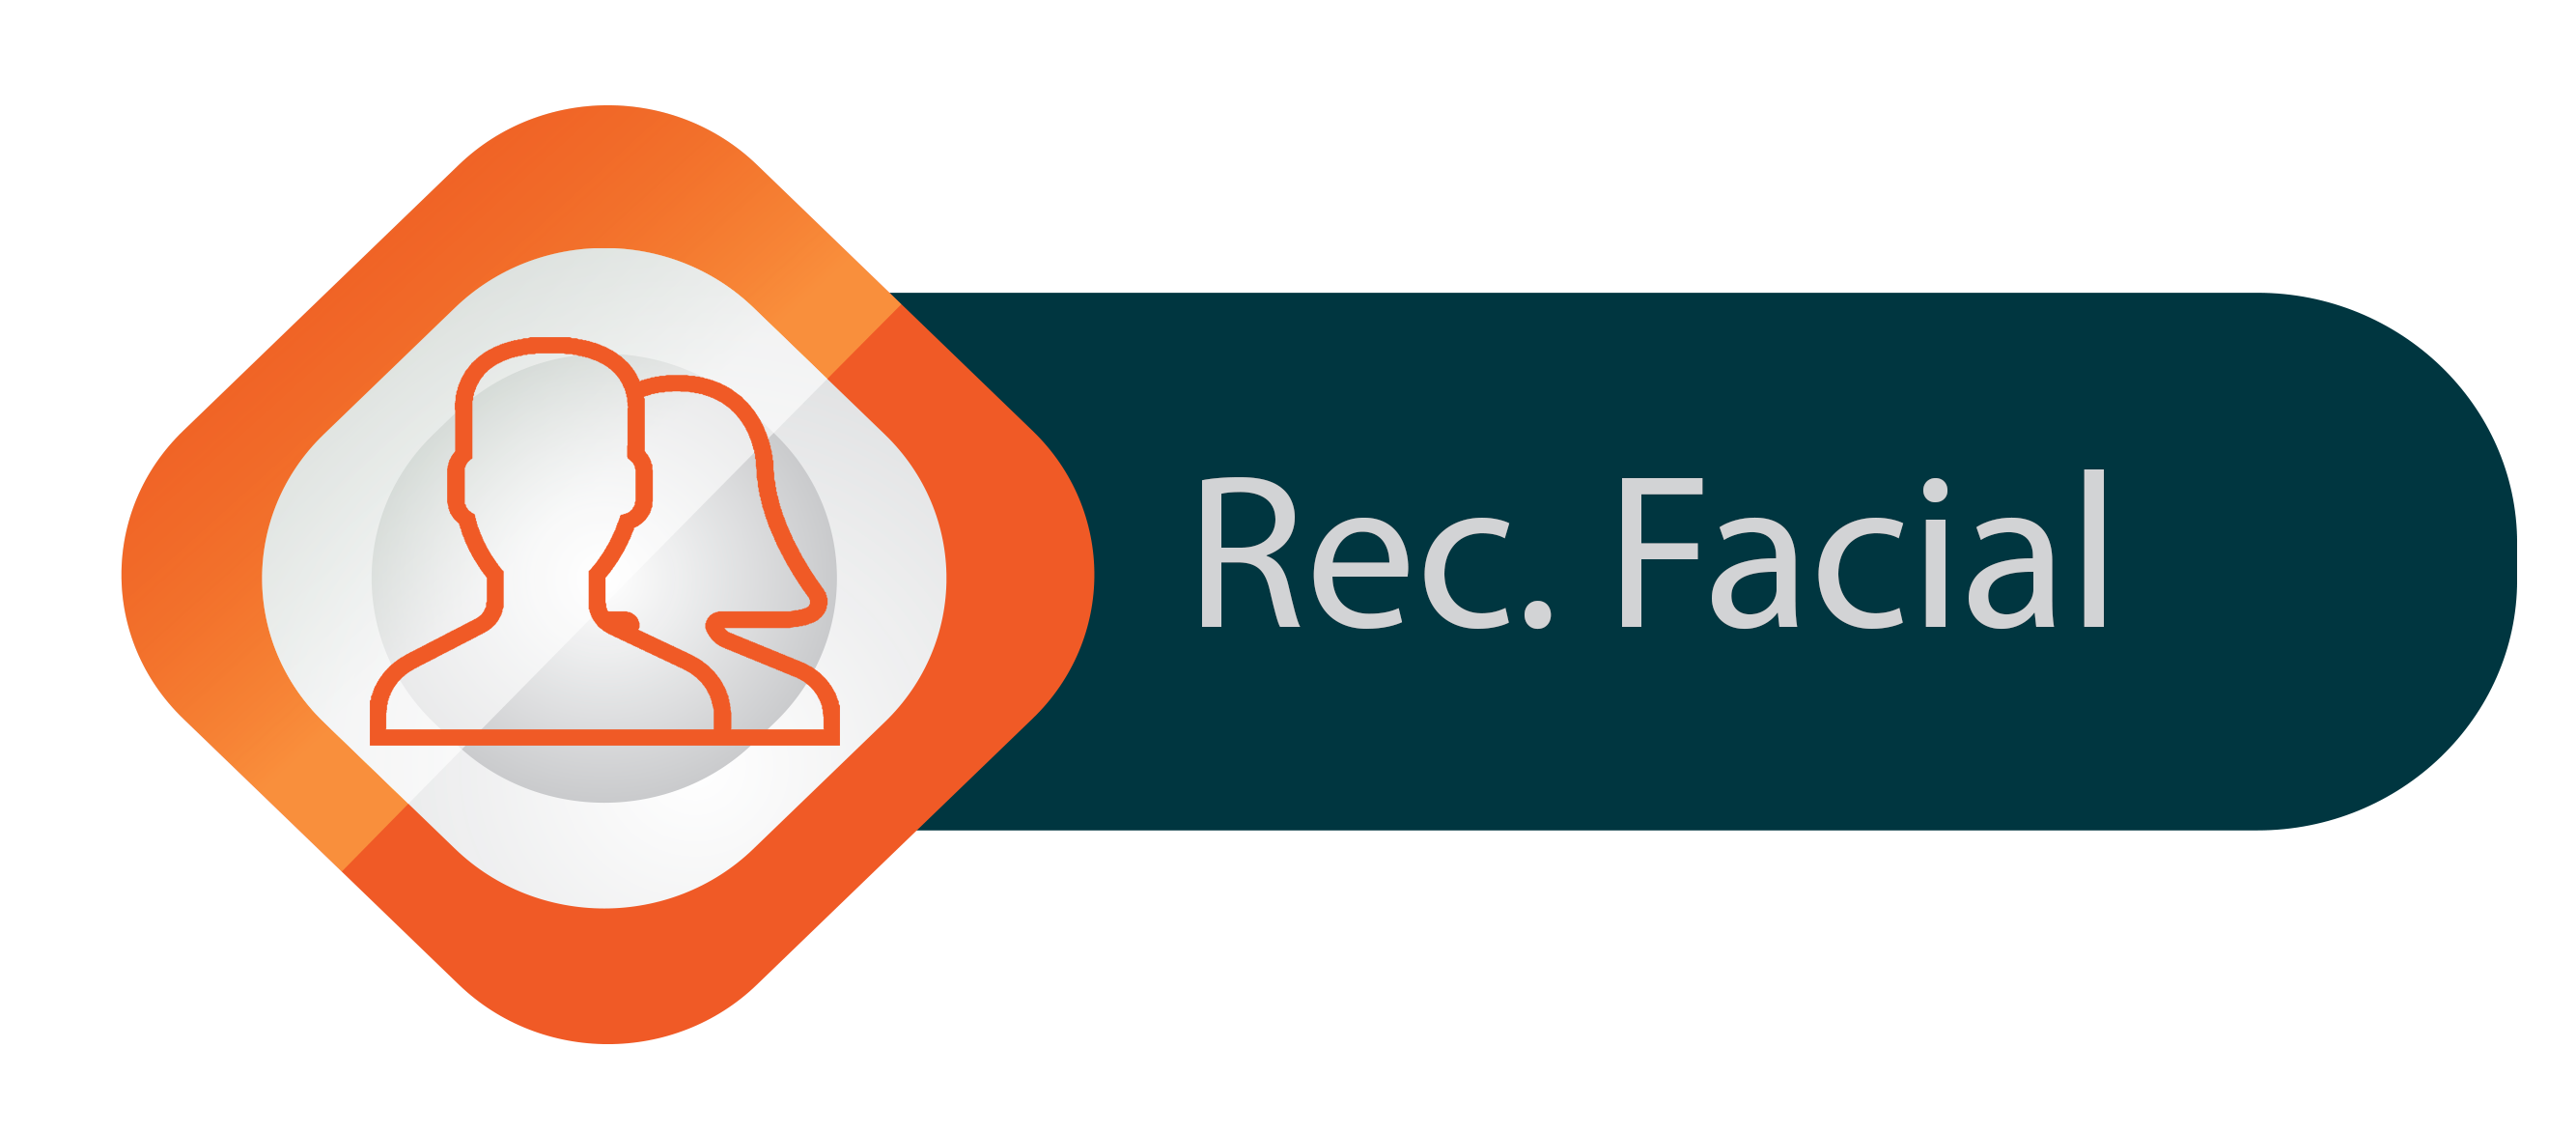 Reconhecimento_Facial_Terminal_Controlo_Presenças_Acessos_por_reconhecimento_Facial_Impressão_digital